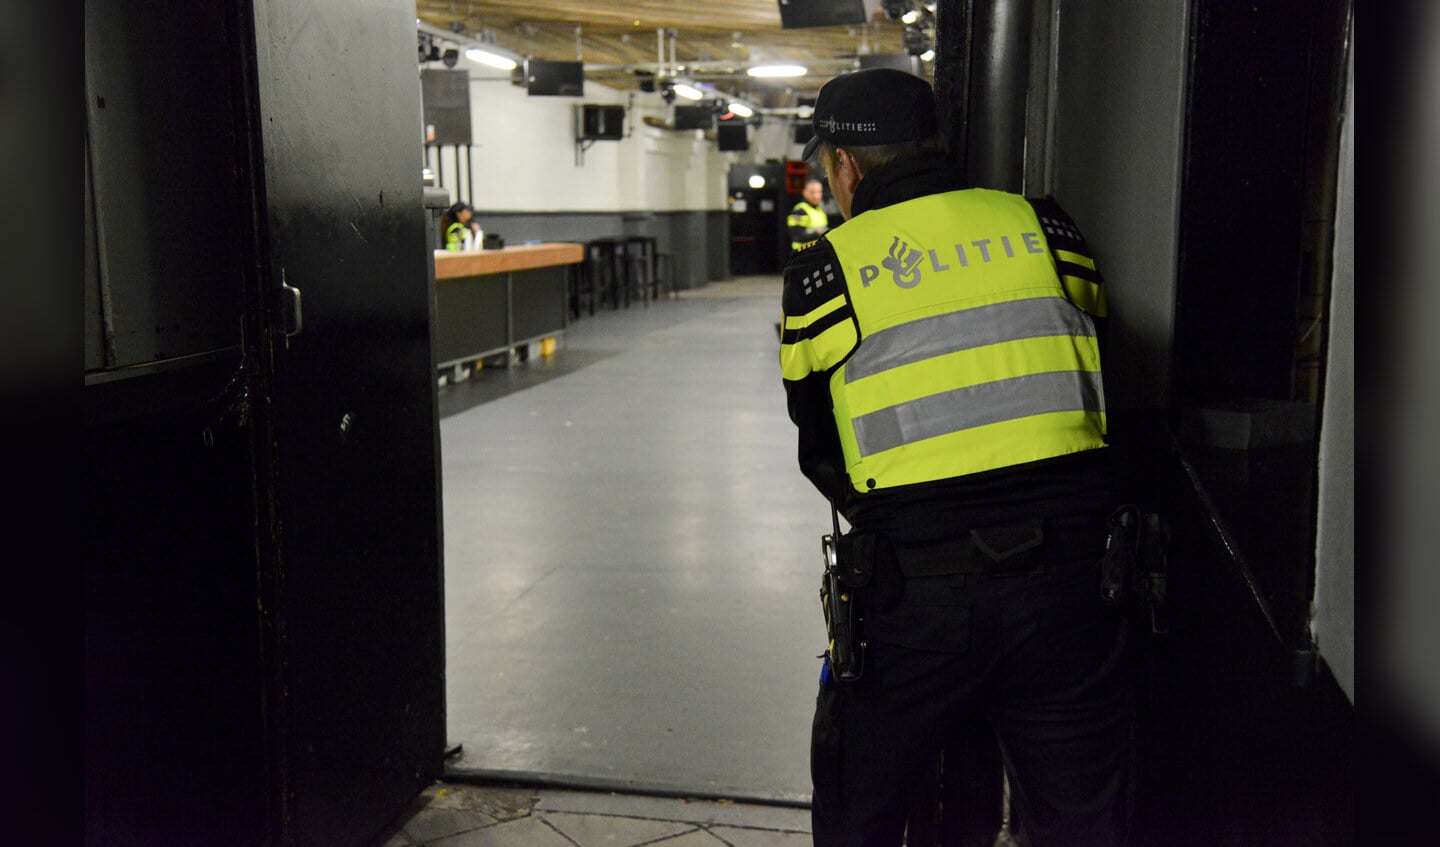 De politie oefent dinsdag 19 april op situaties in het uitgaansleven in Breda.